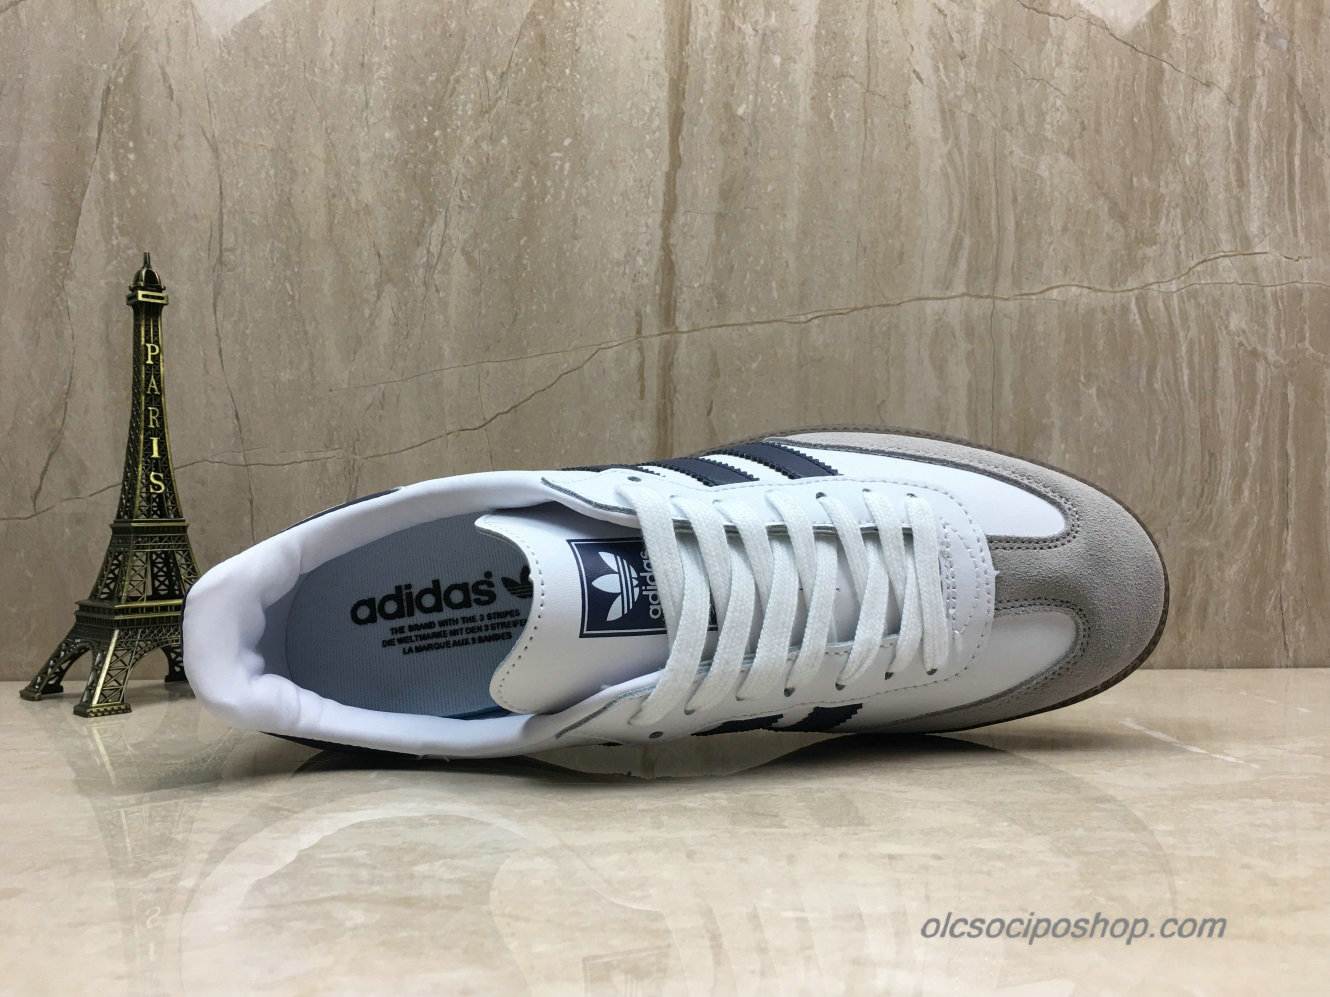 Adidas Samba OG Fehér/Sötétkék/Szürke Cipők (B75681) - Kattintásra bezárul